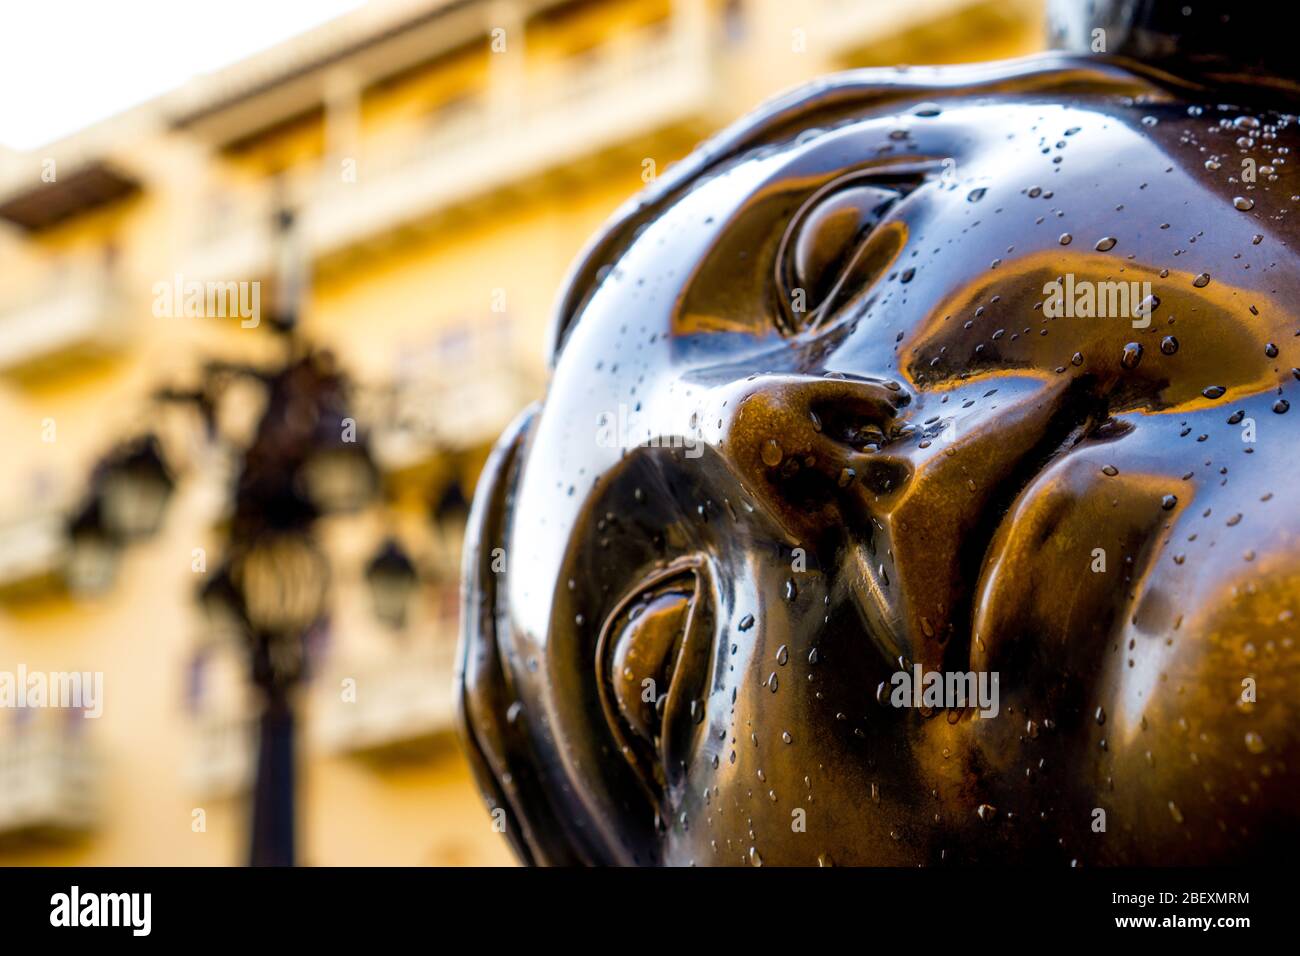 Cara con gotas, escultura del artista colombiano fernando botero frente a la plaza santo domingo en cartagena colombia Foto de stock